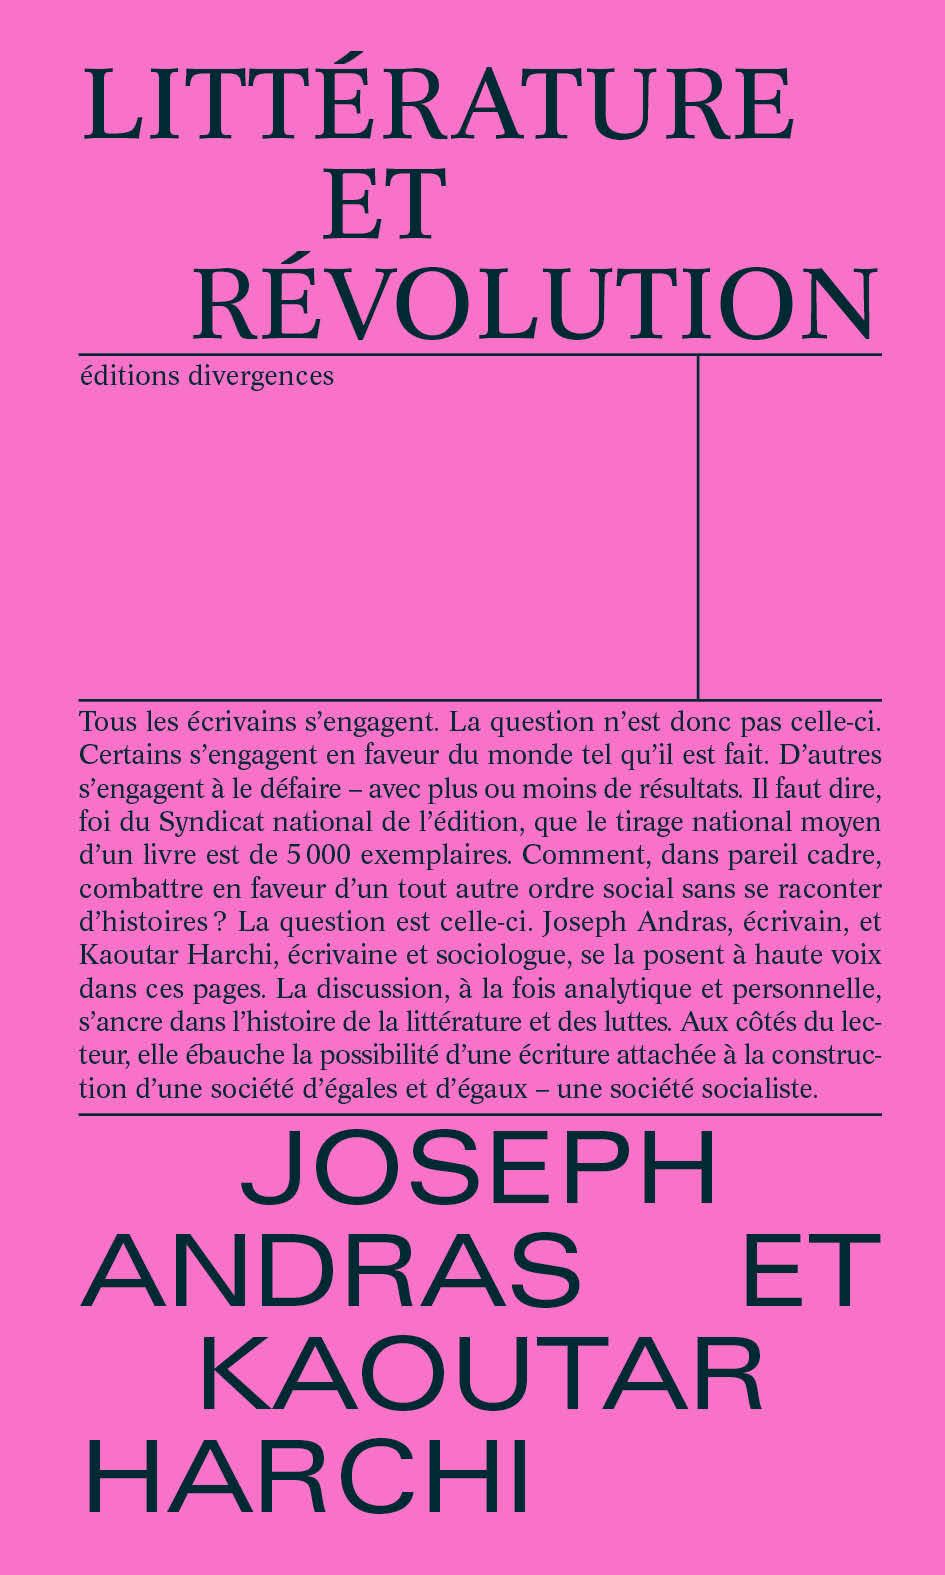 Joseph Andras et Kaoutar Harchi, Littérature et Révolution